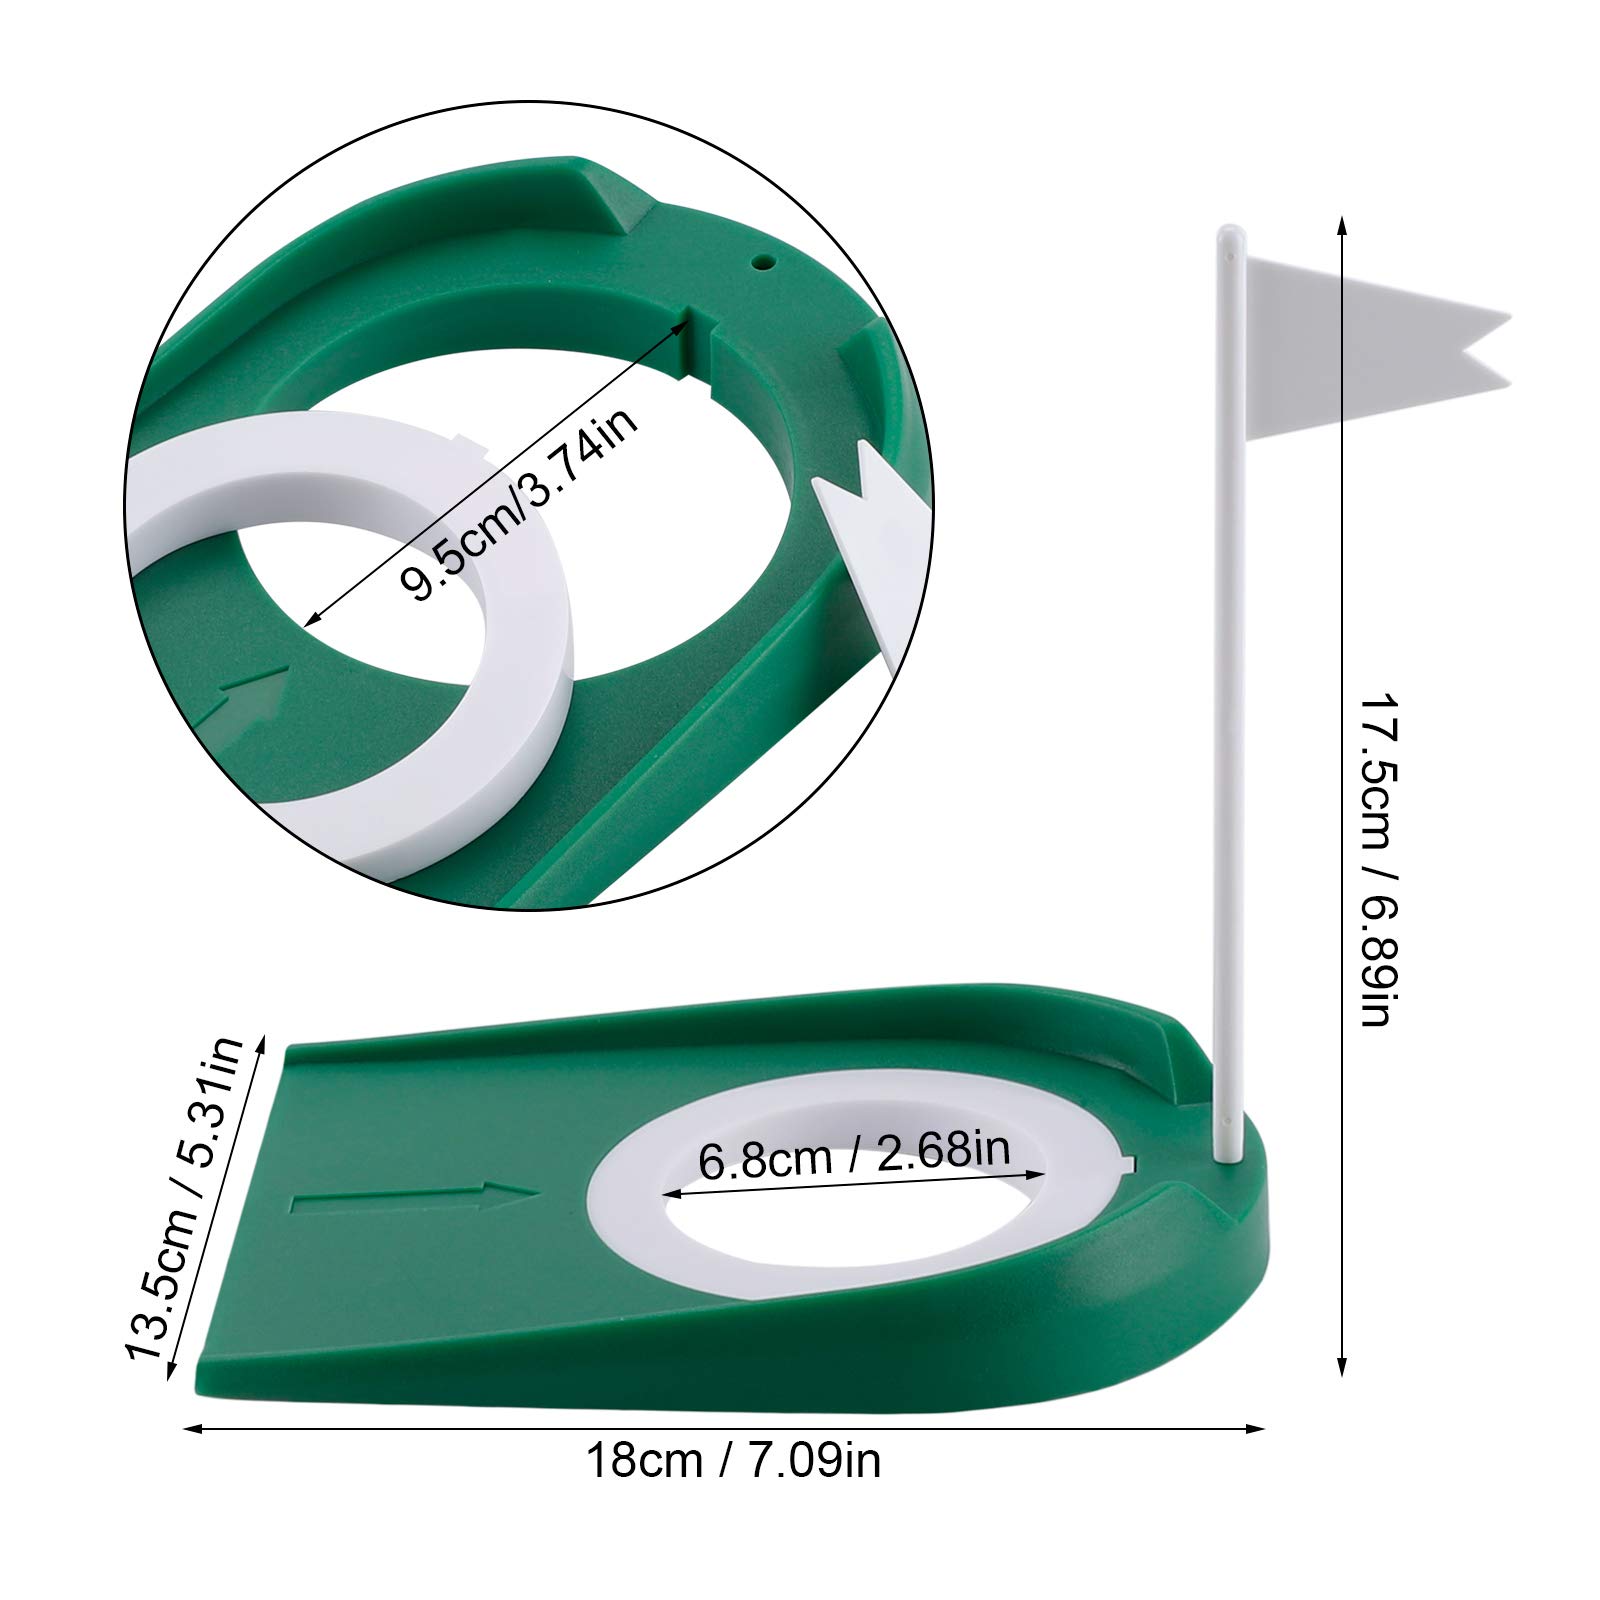 Kigniote Golf-Übungs-Putter-Pad, Golf Putting Cup aus Kunststoff für Drinnen und Draußen Übungshilfen mit Verstellbarem Hole und Flagge